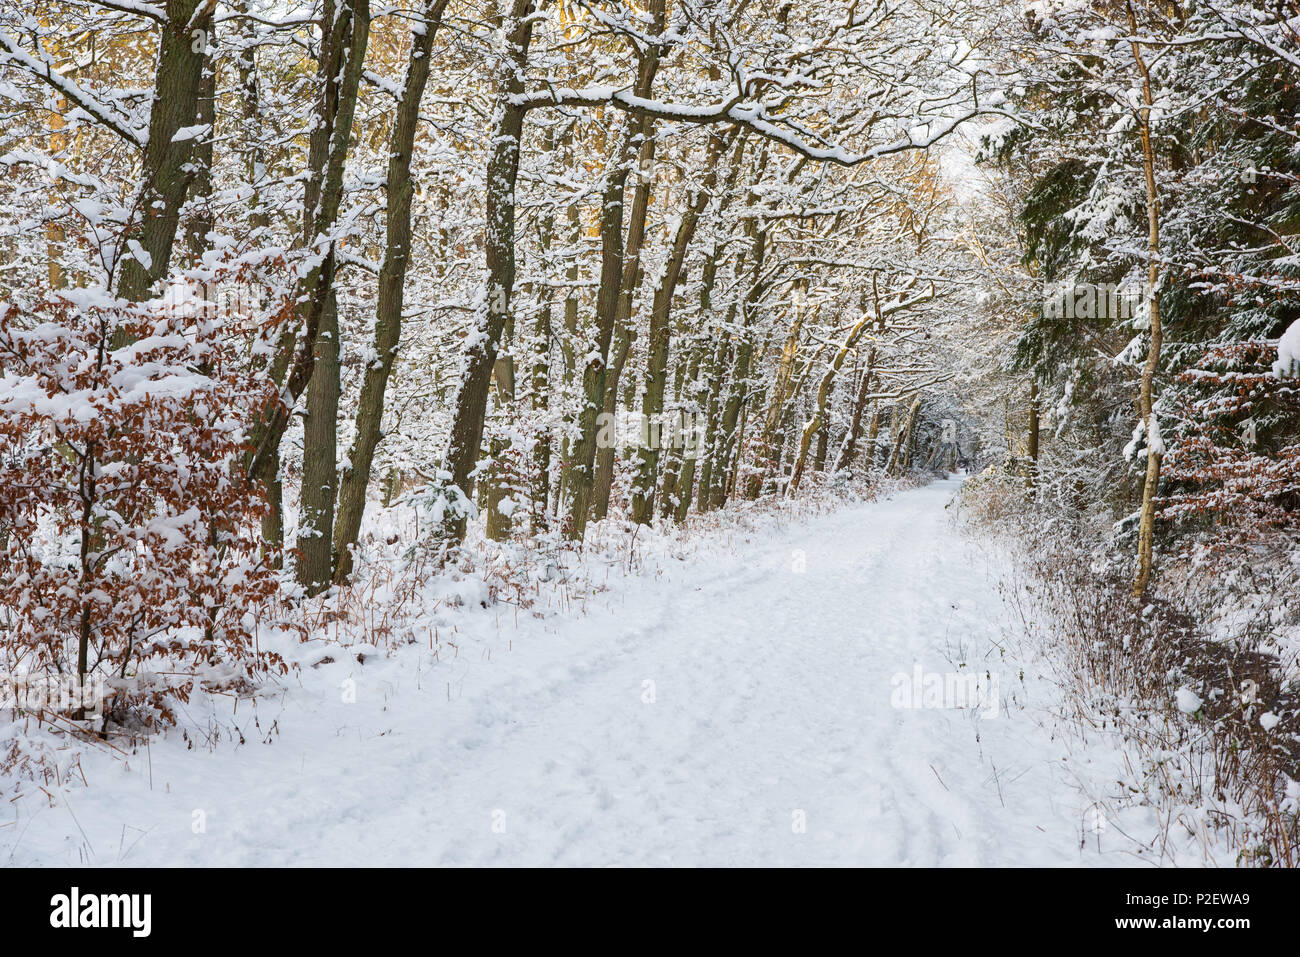 Forêt, sentier, hiver, neige, promenade, mer Baltique, Allemagne, forêt Darss Banque D'Images